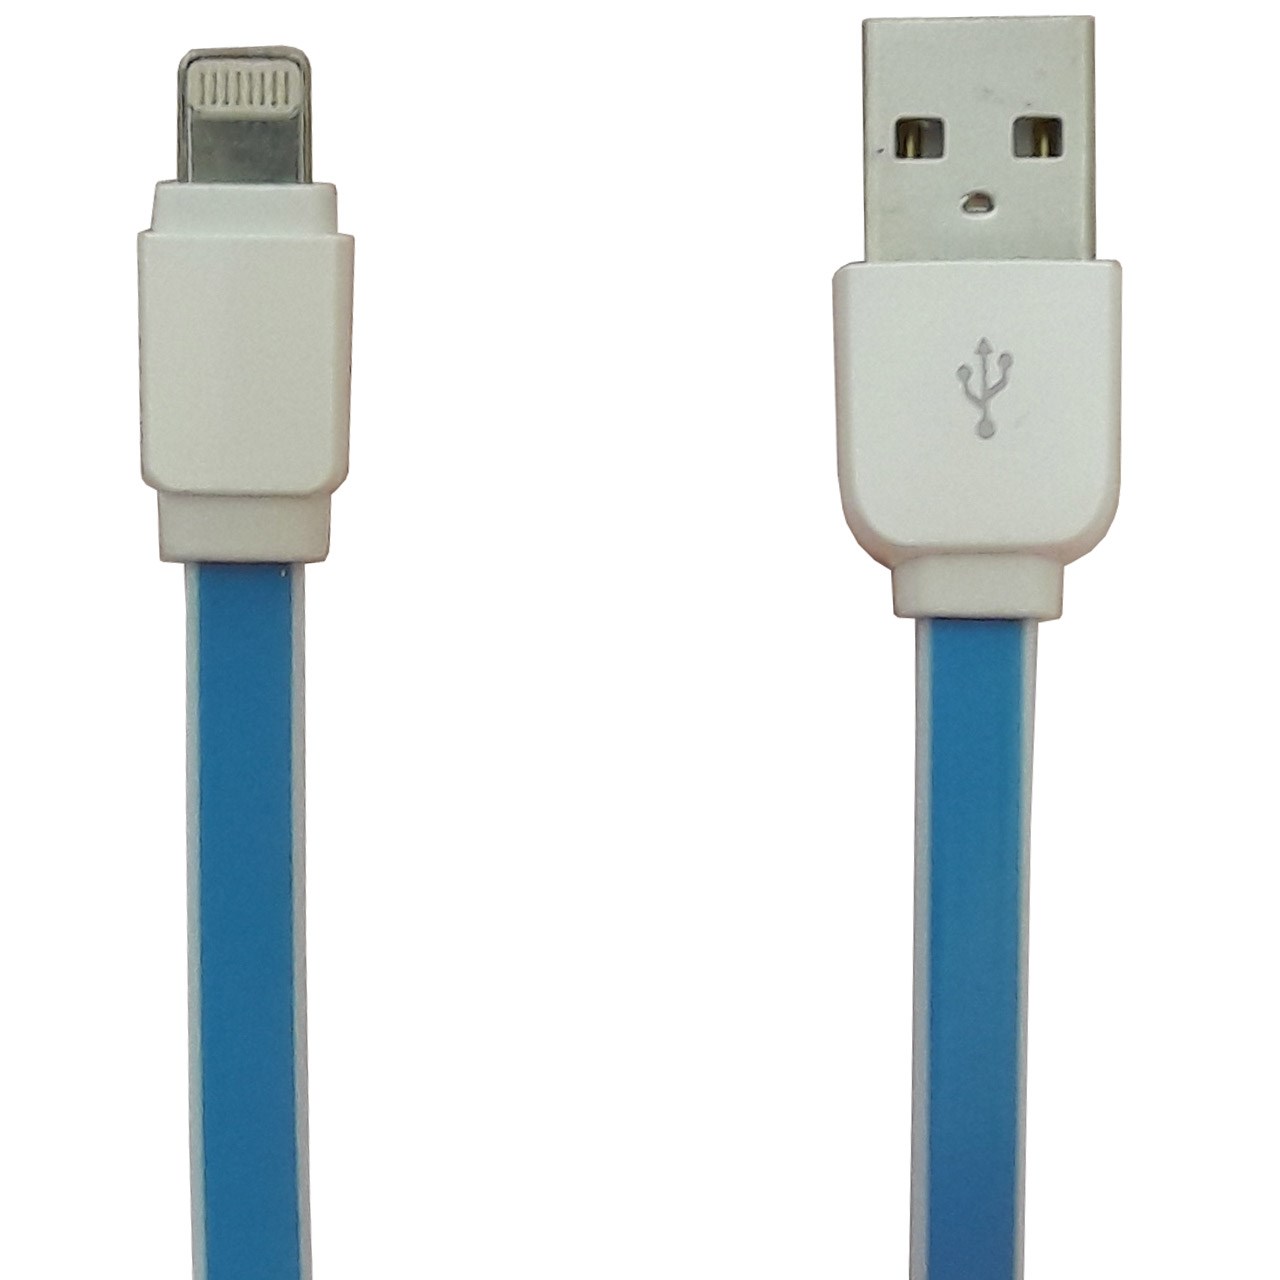 کابل تبدیل USB به لایتنینگ الدینیو مدل XS-07 به طول 1 متر